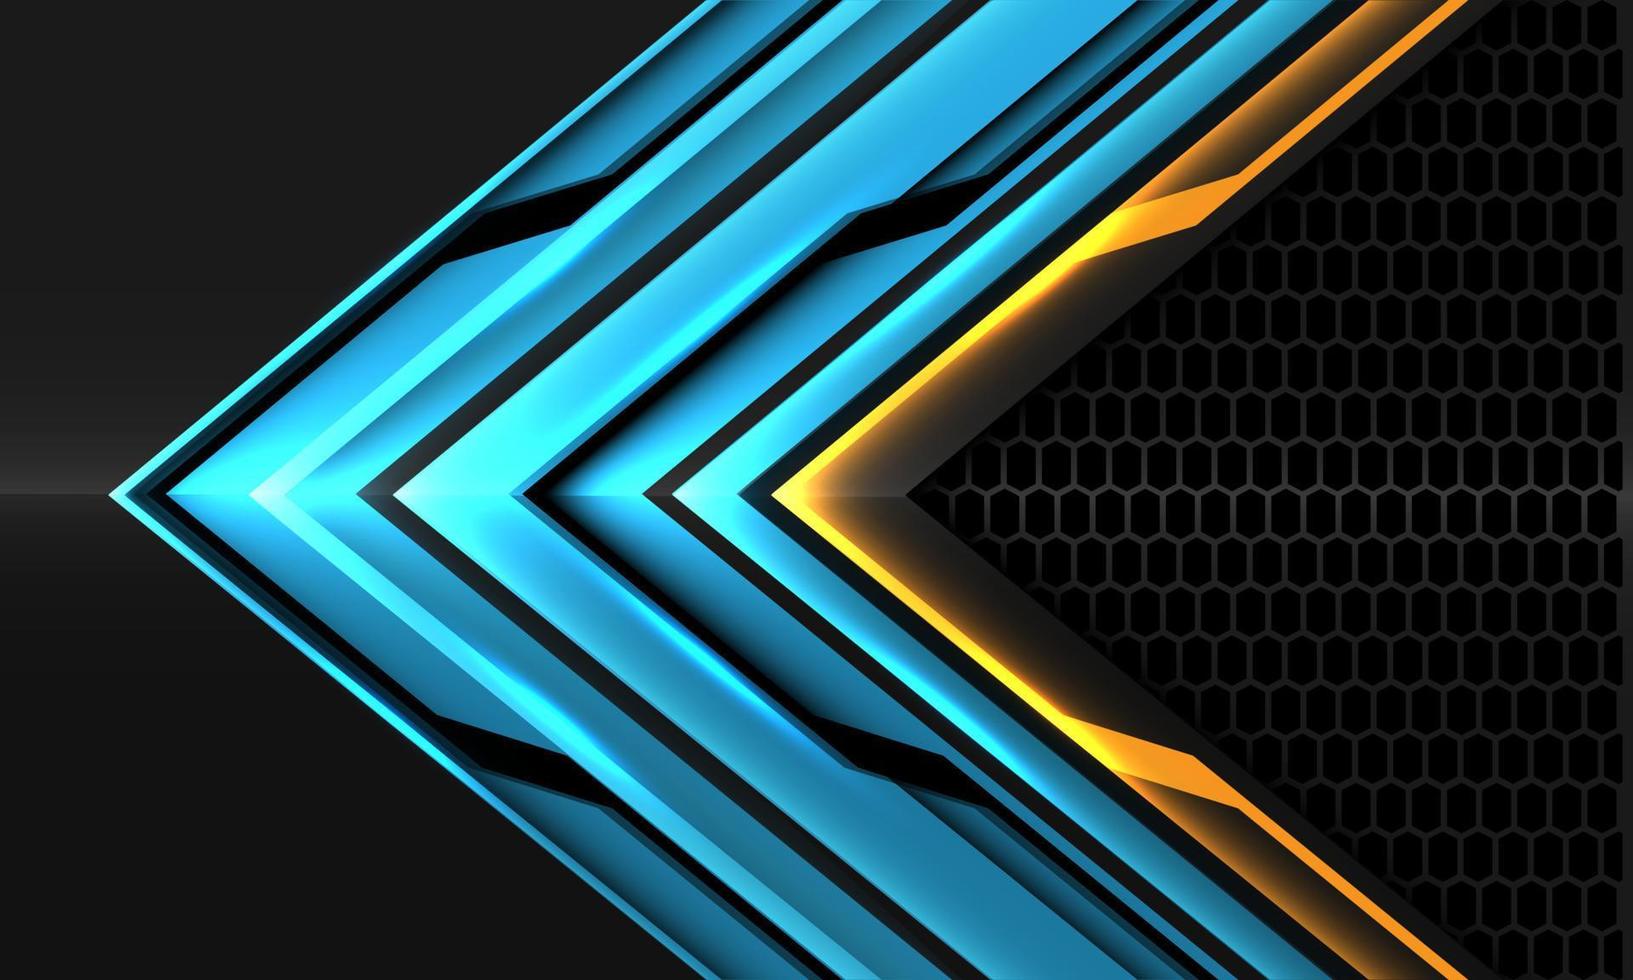 dirección de flecha metálica negra naranja azul abstracto geométrico con diseño de malla hexagonal gris fondo de tecnología futurista moderna vector